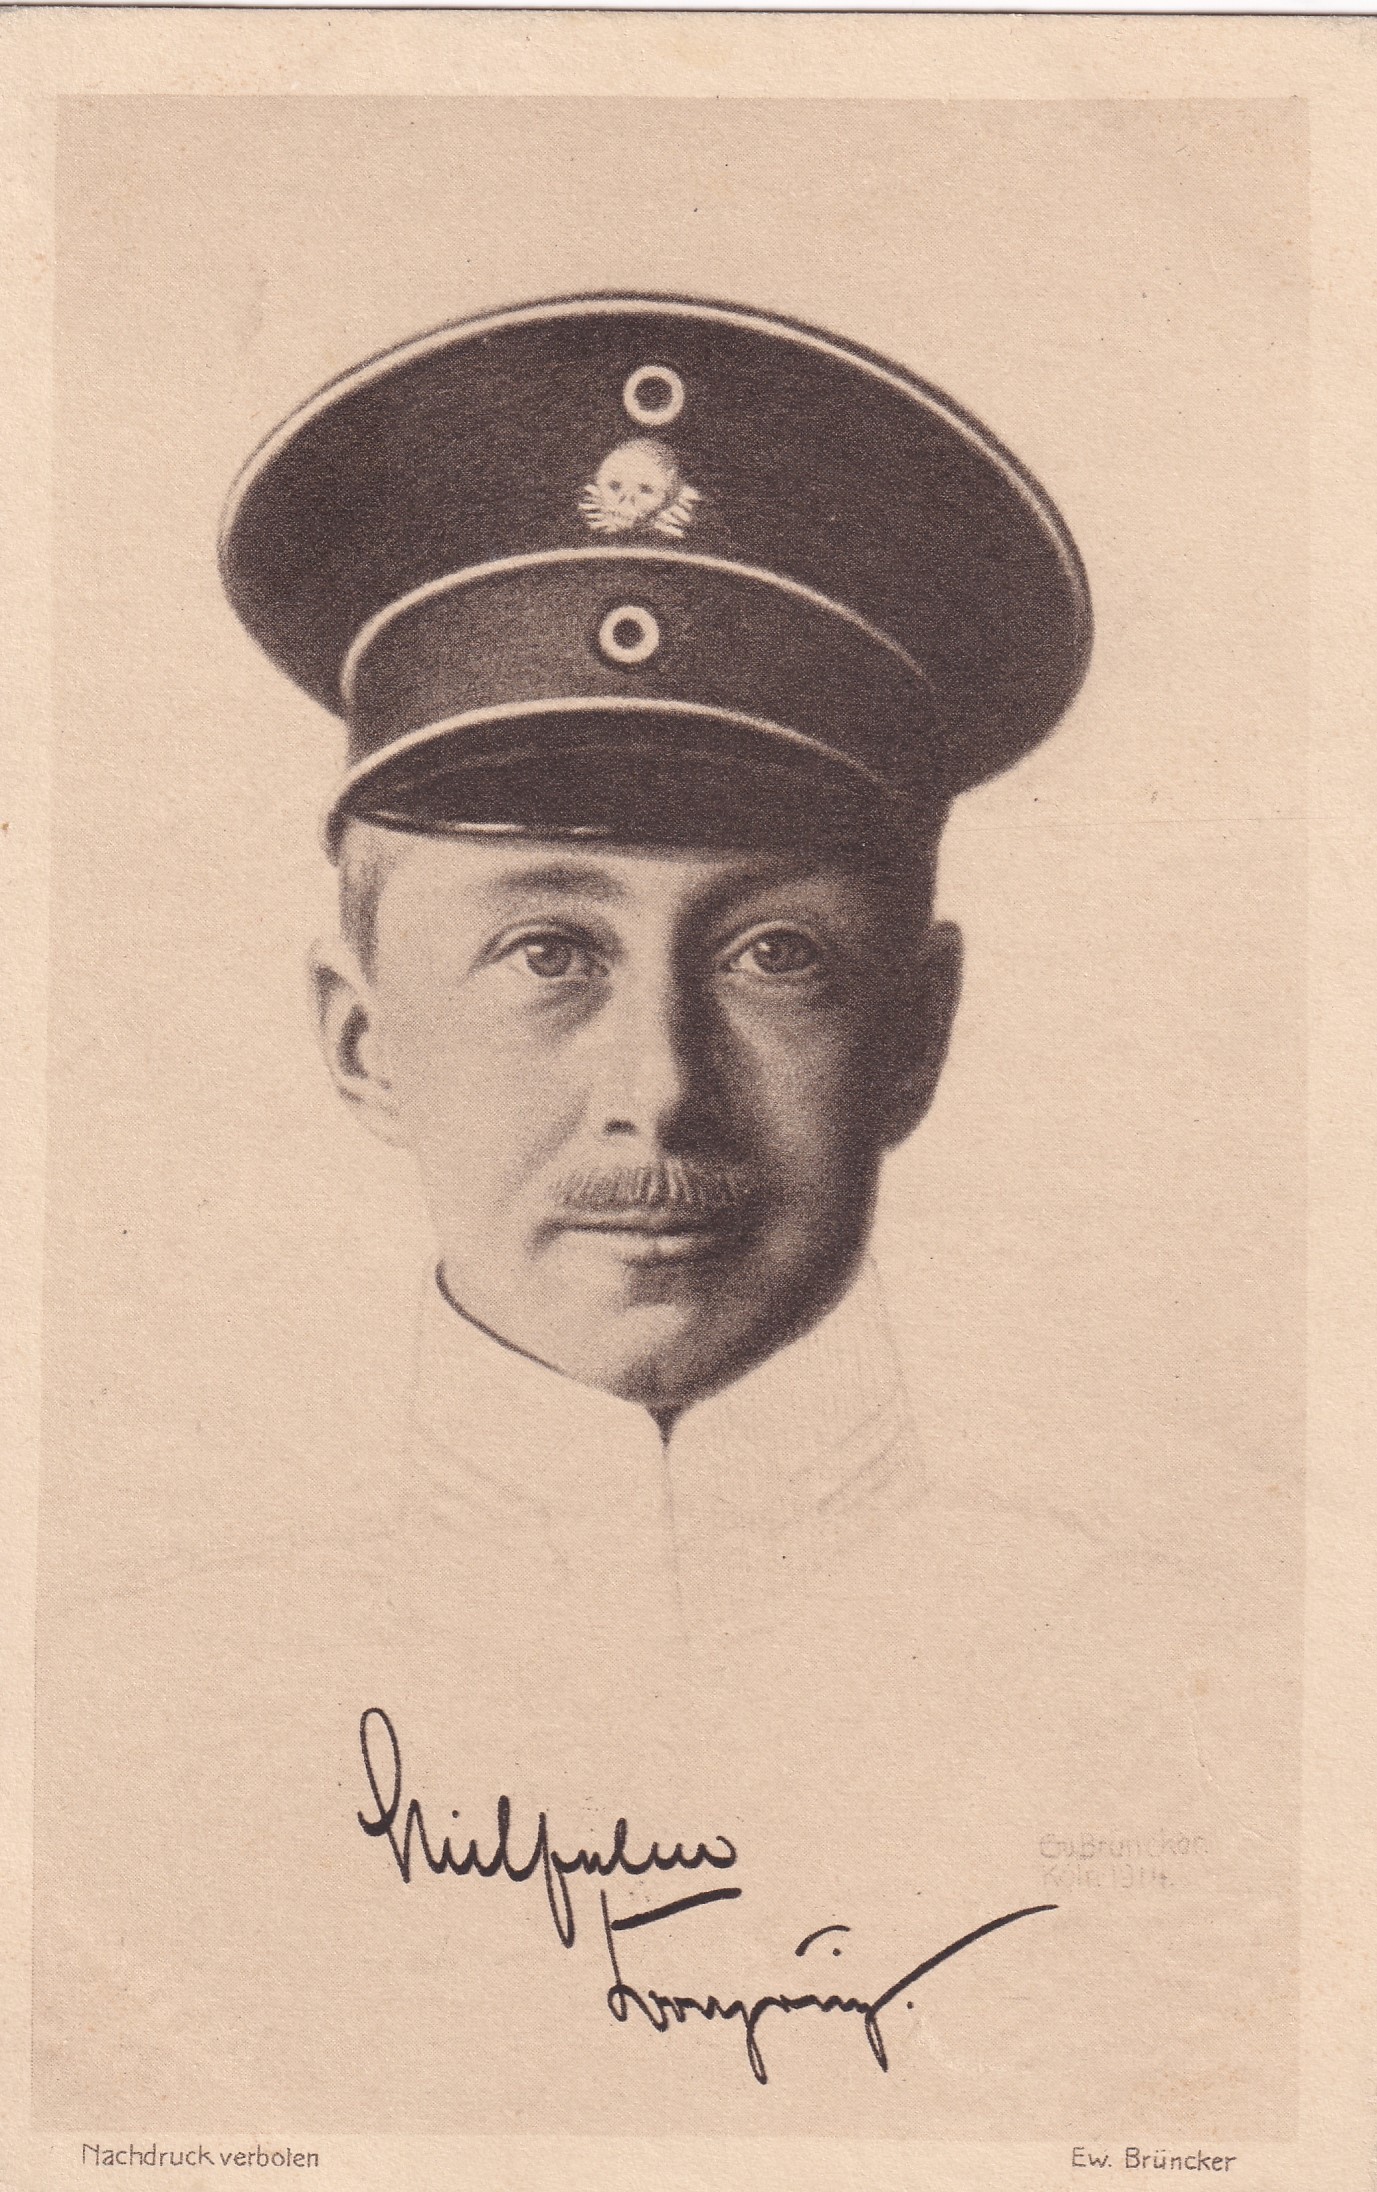 Bildpostkarte mit einem grafischen Porträt des Kronprinzen Wilhelm (1882-1951), 1914 (Schloß Wernigerode GmbH RR-F)